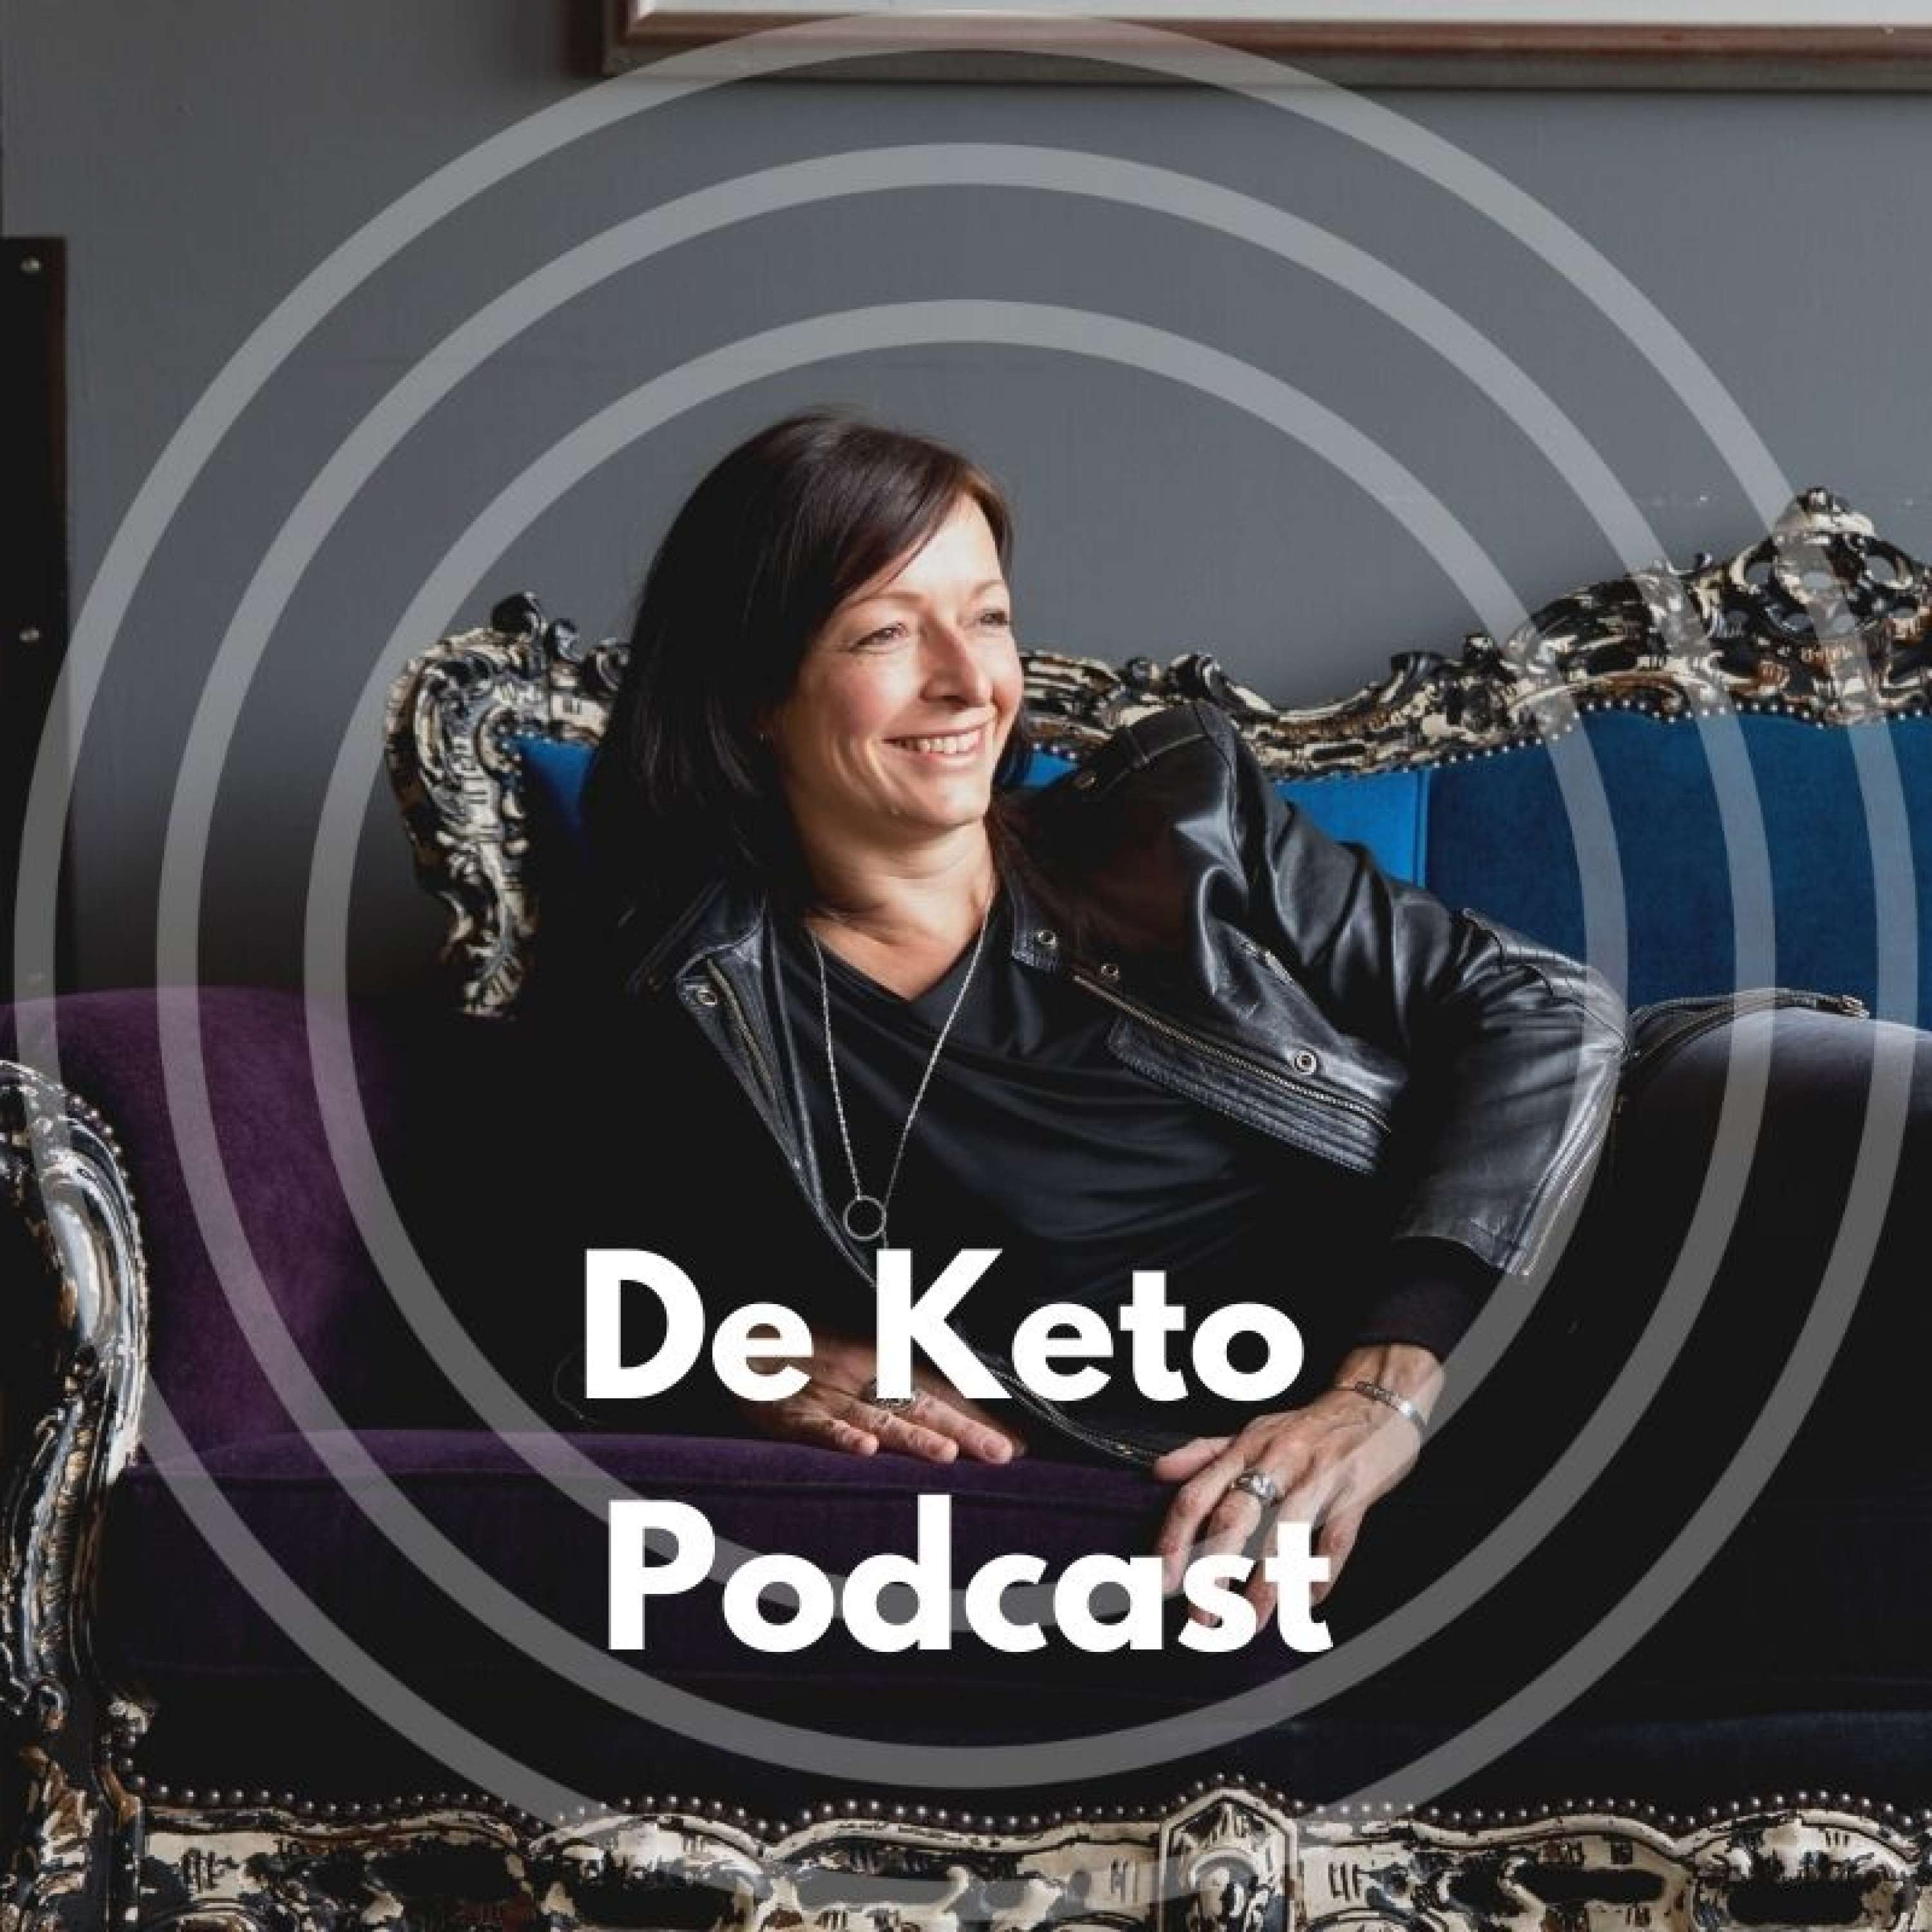 De Keto Podcast logo